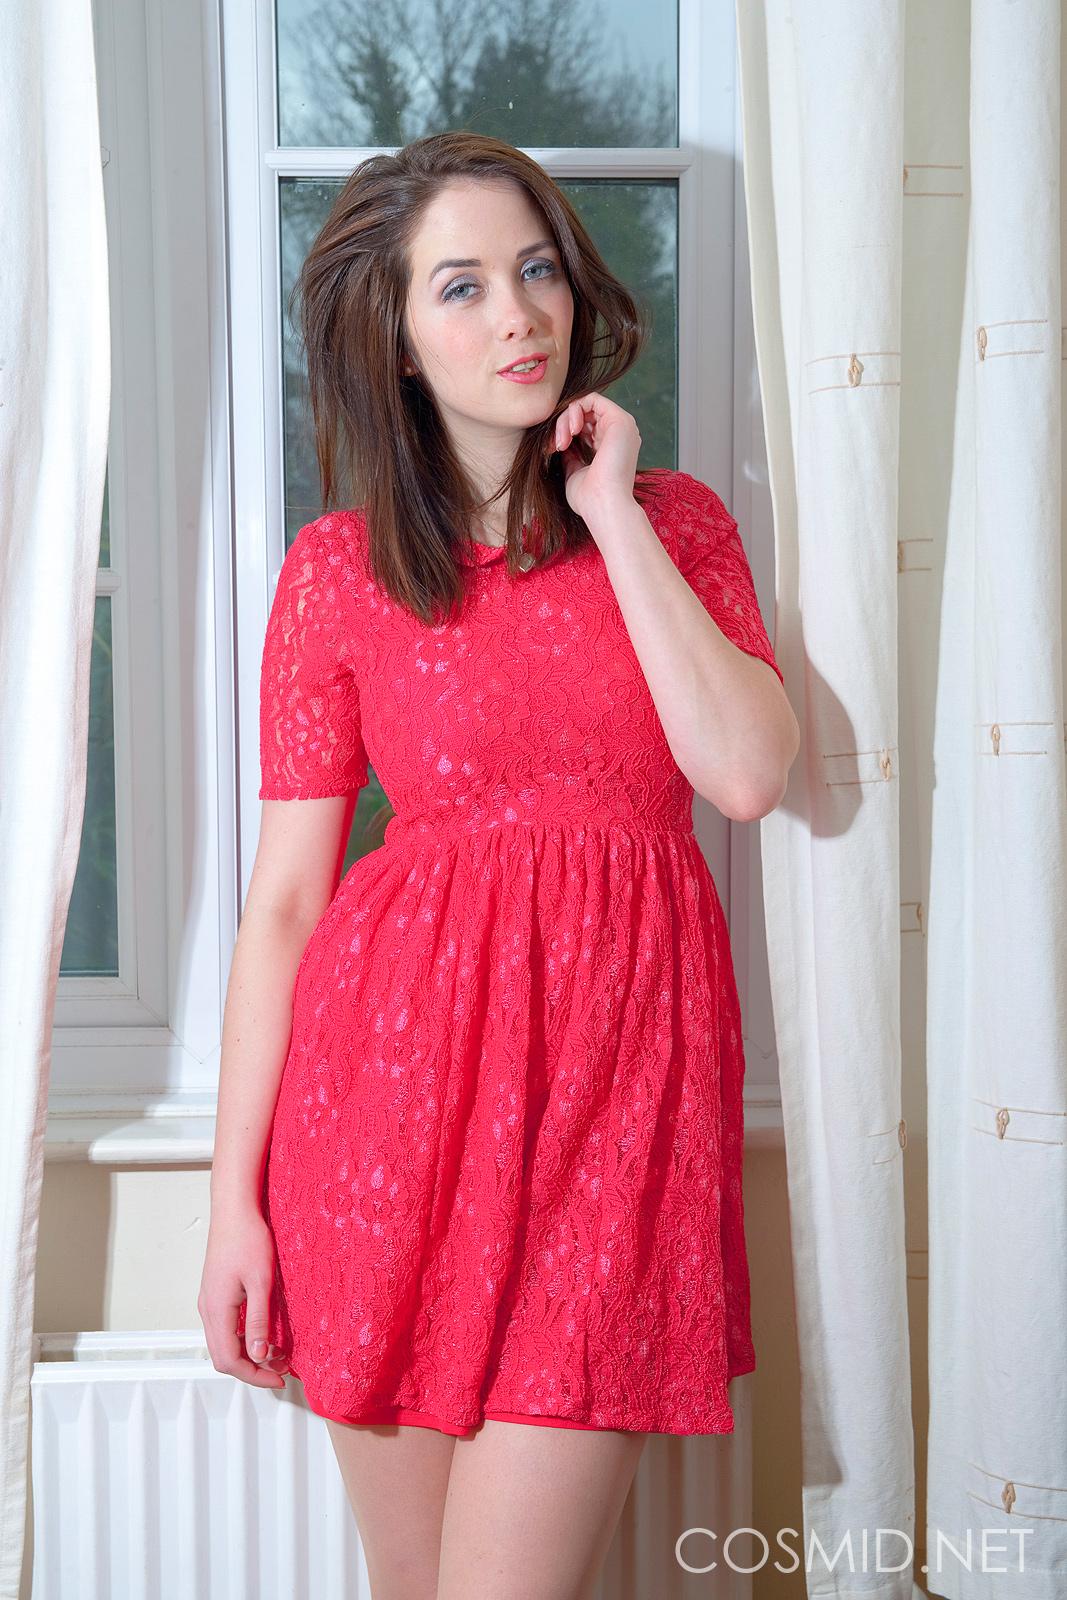 Immagini di elizabeth james cercando caldo nel suo vestito rosso
 #54149433